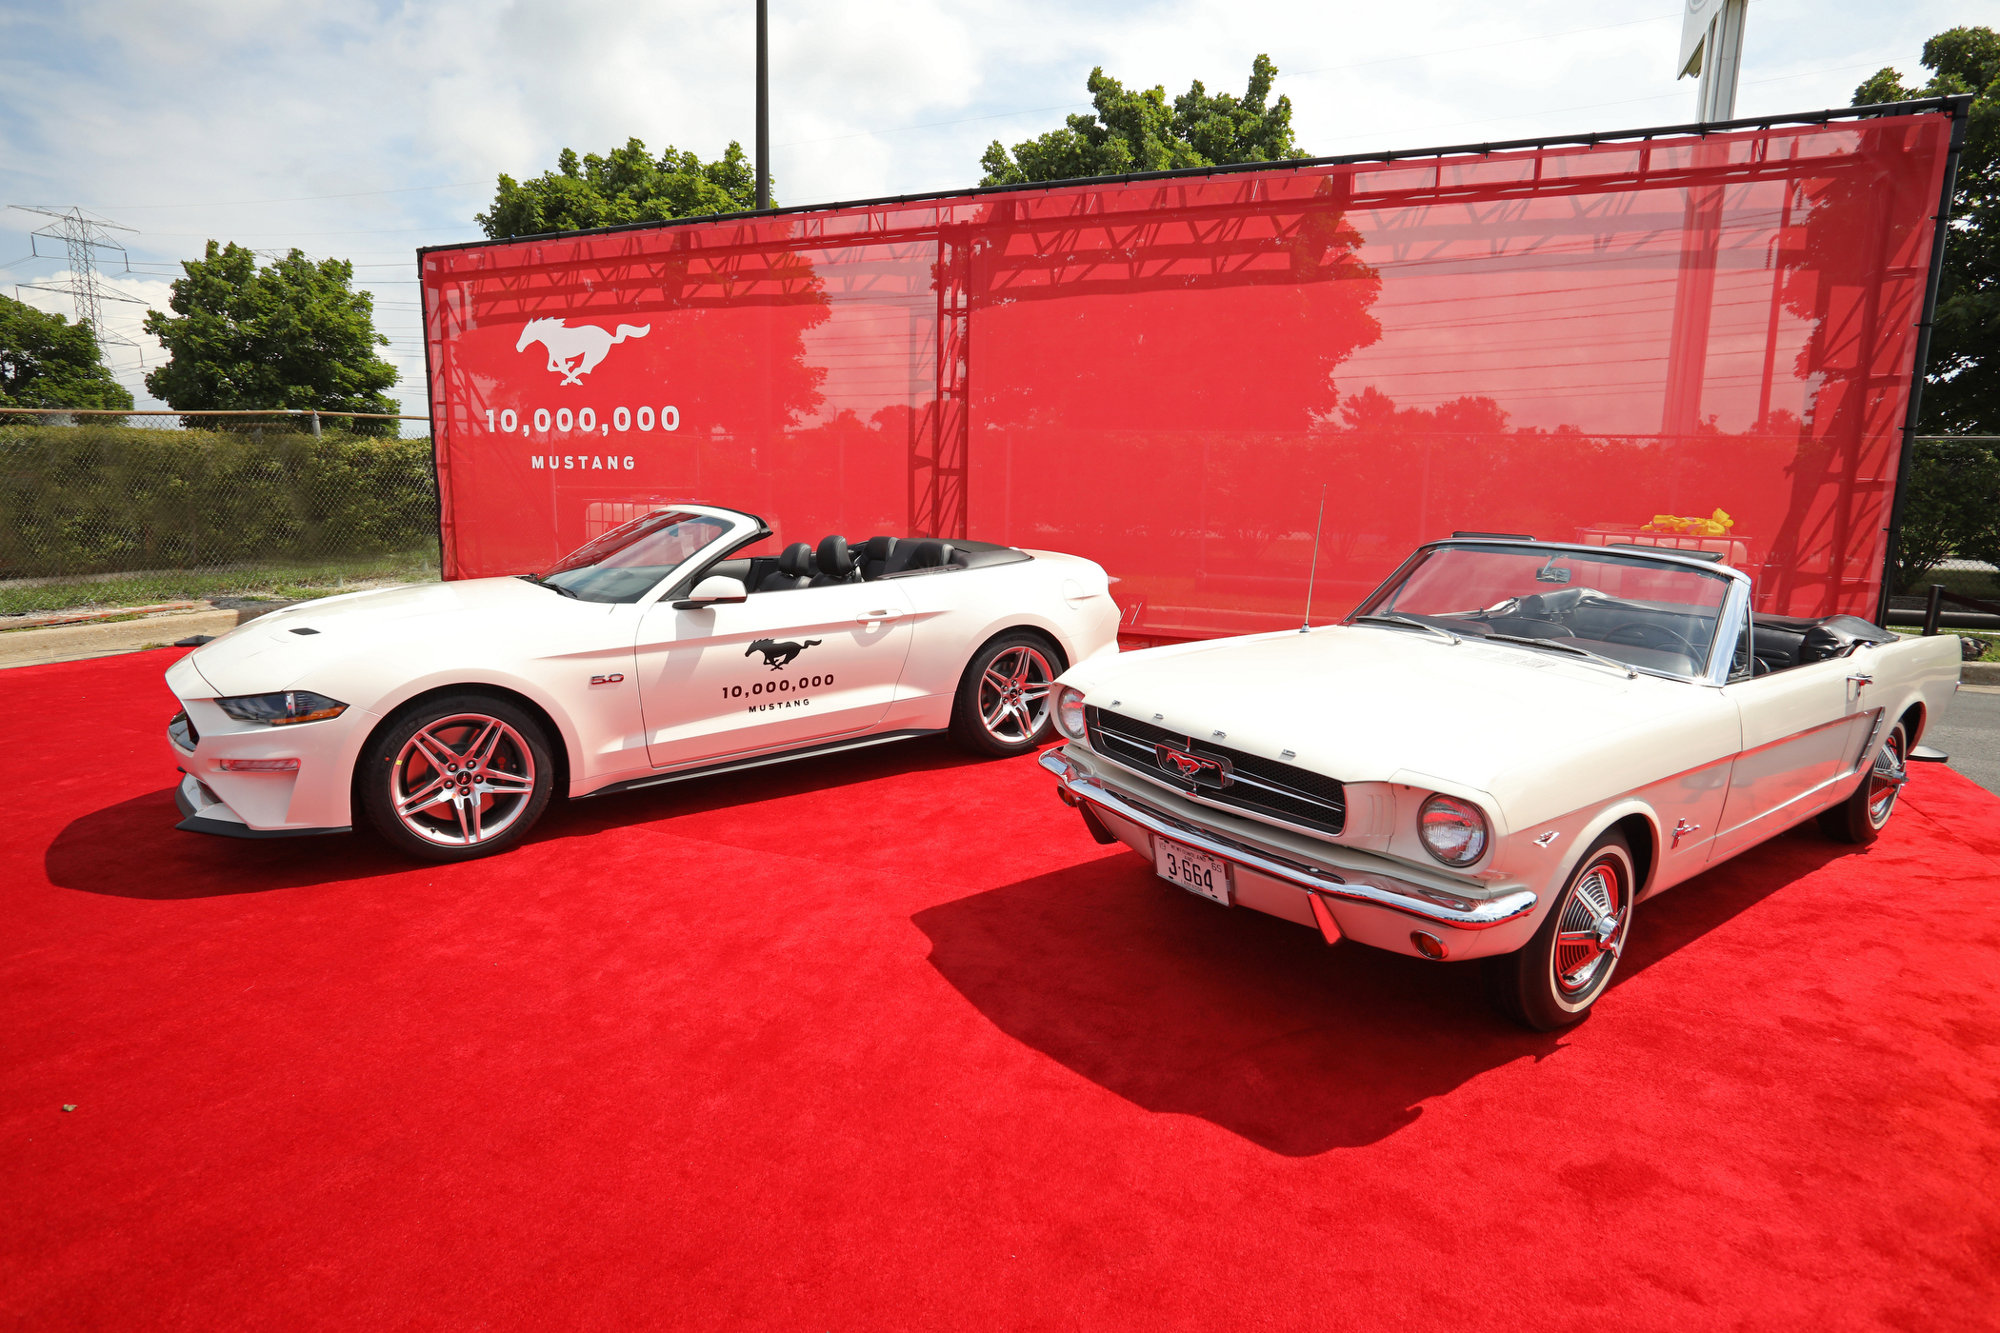 Mustang-第1000万台福特Mustang（左)致敬了1964年产的Mustang VIN 001（右）——第一台有序列号的福特Mustang，搭配3速变速箱和功率164马力的V8发动机。.jpg